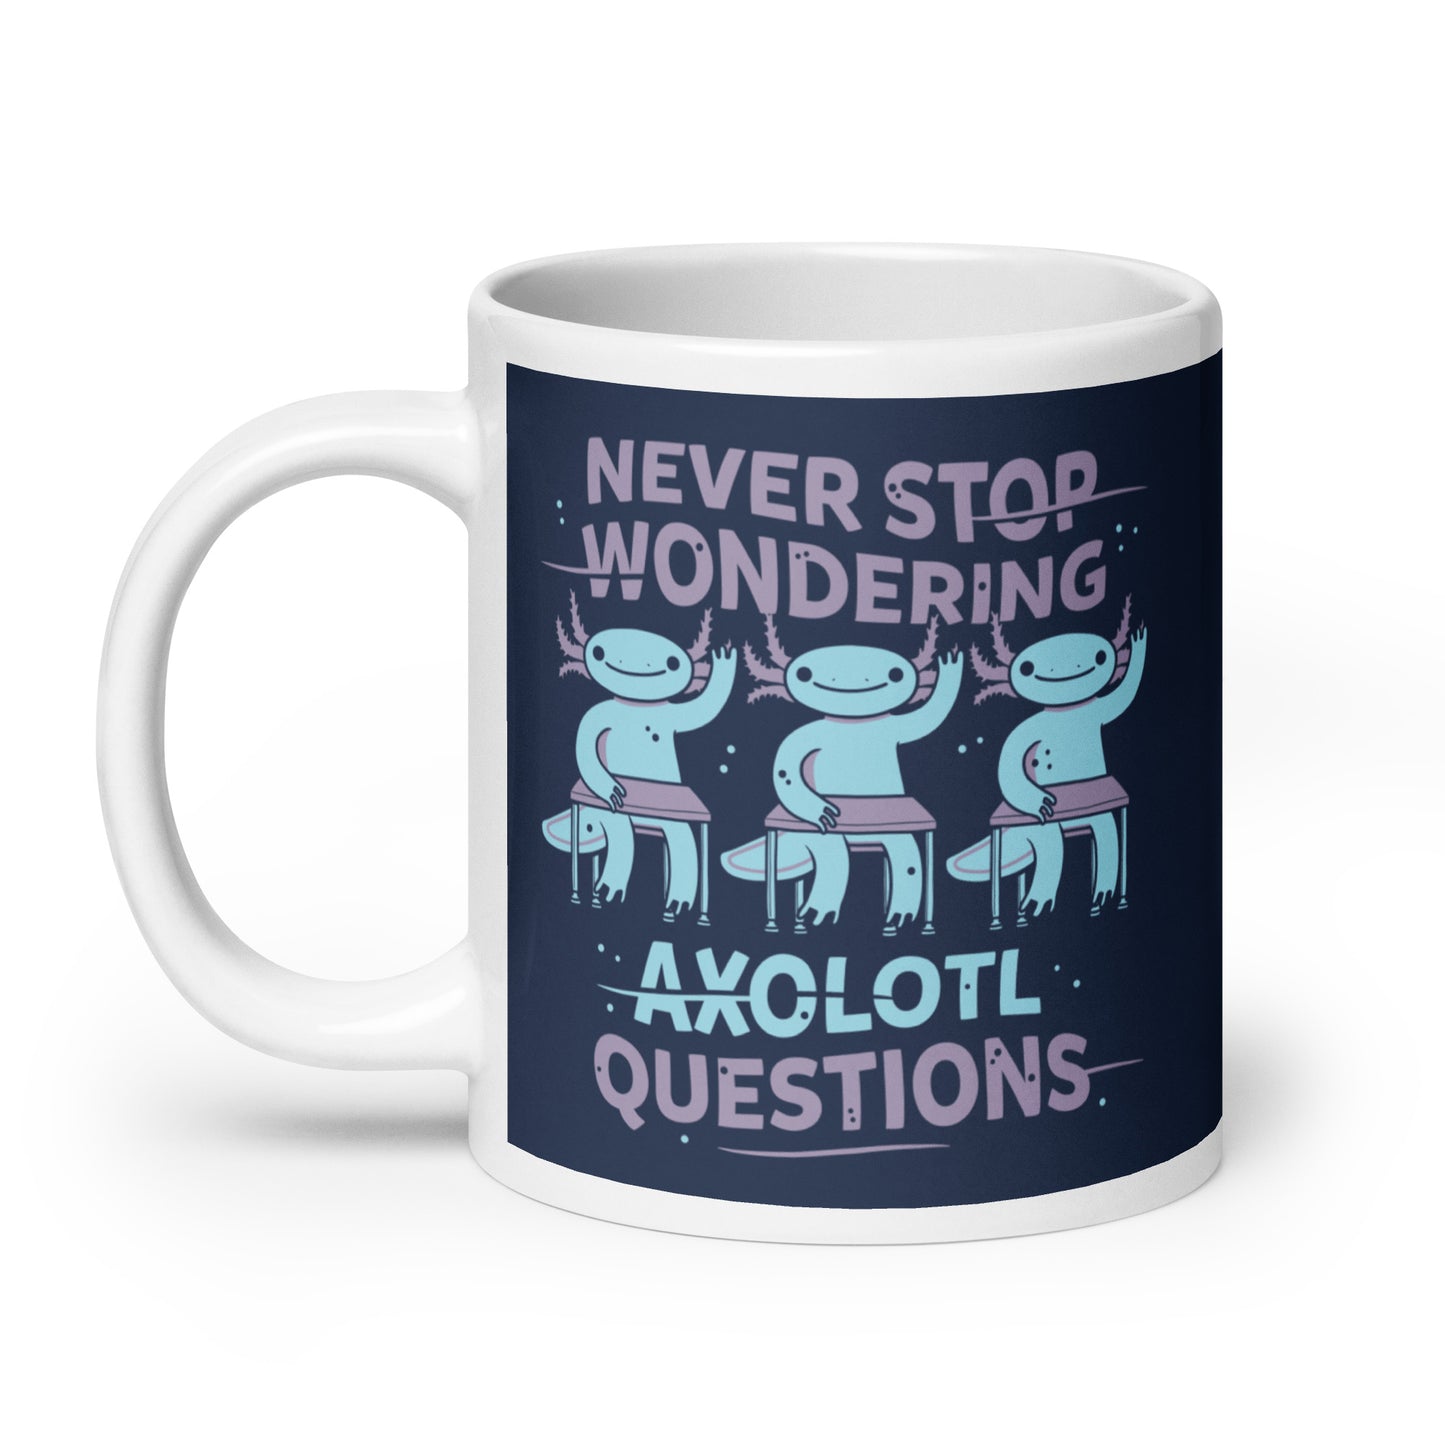 Axolotl Questions Mug